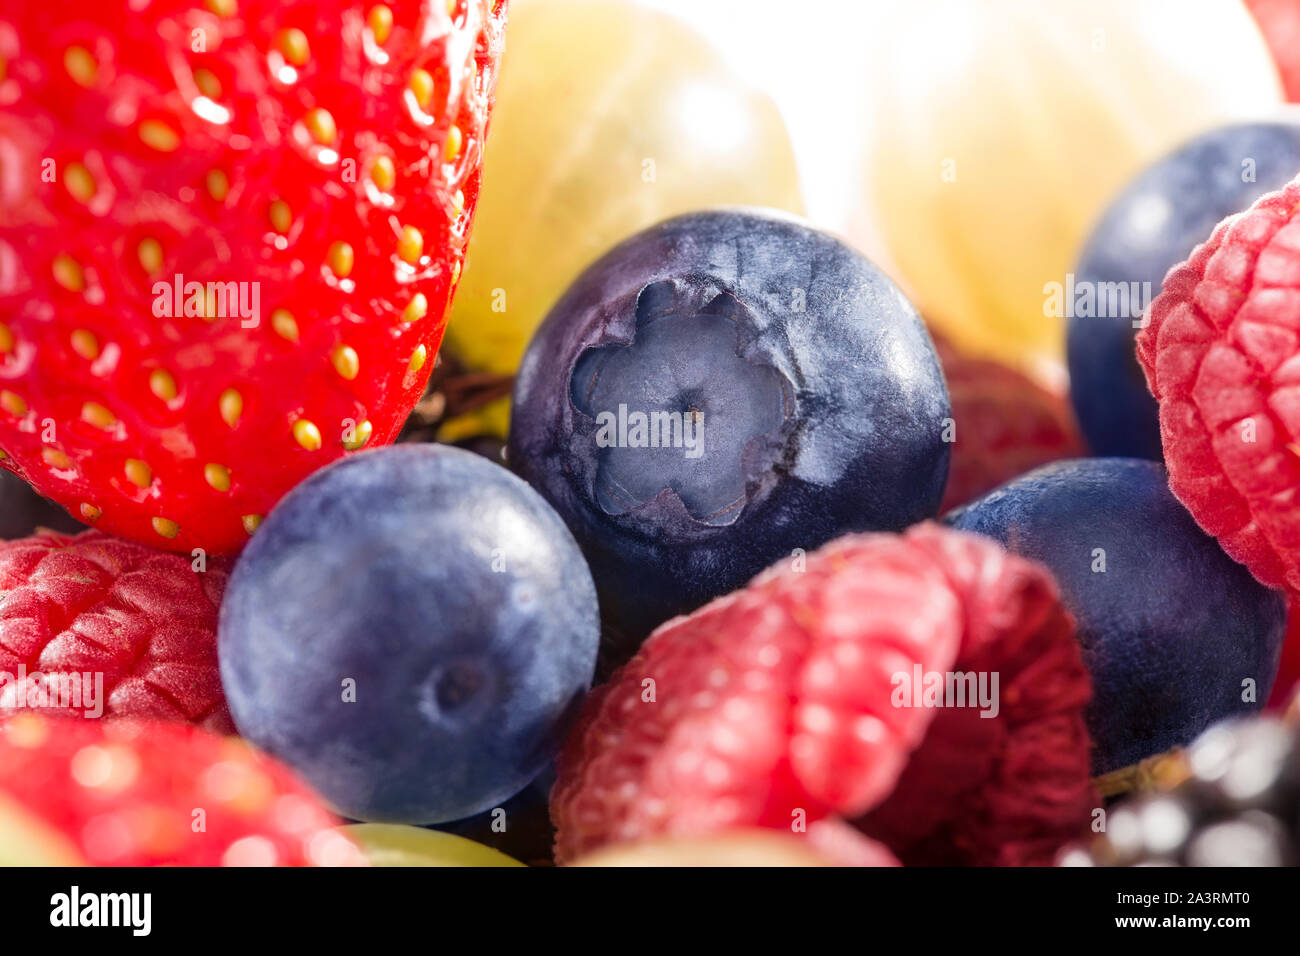 Une collection de petits fruits d'été, fraises, bleuets, et des framboises. Banque D'Images